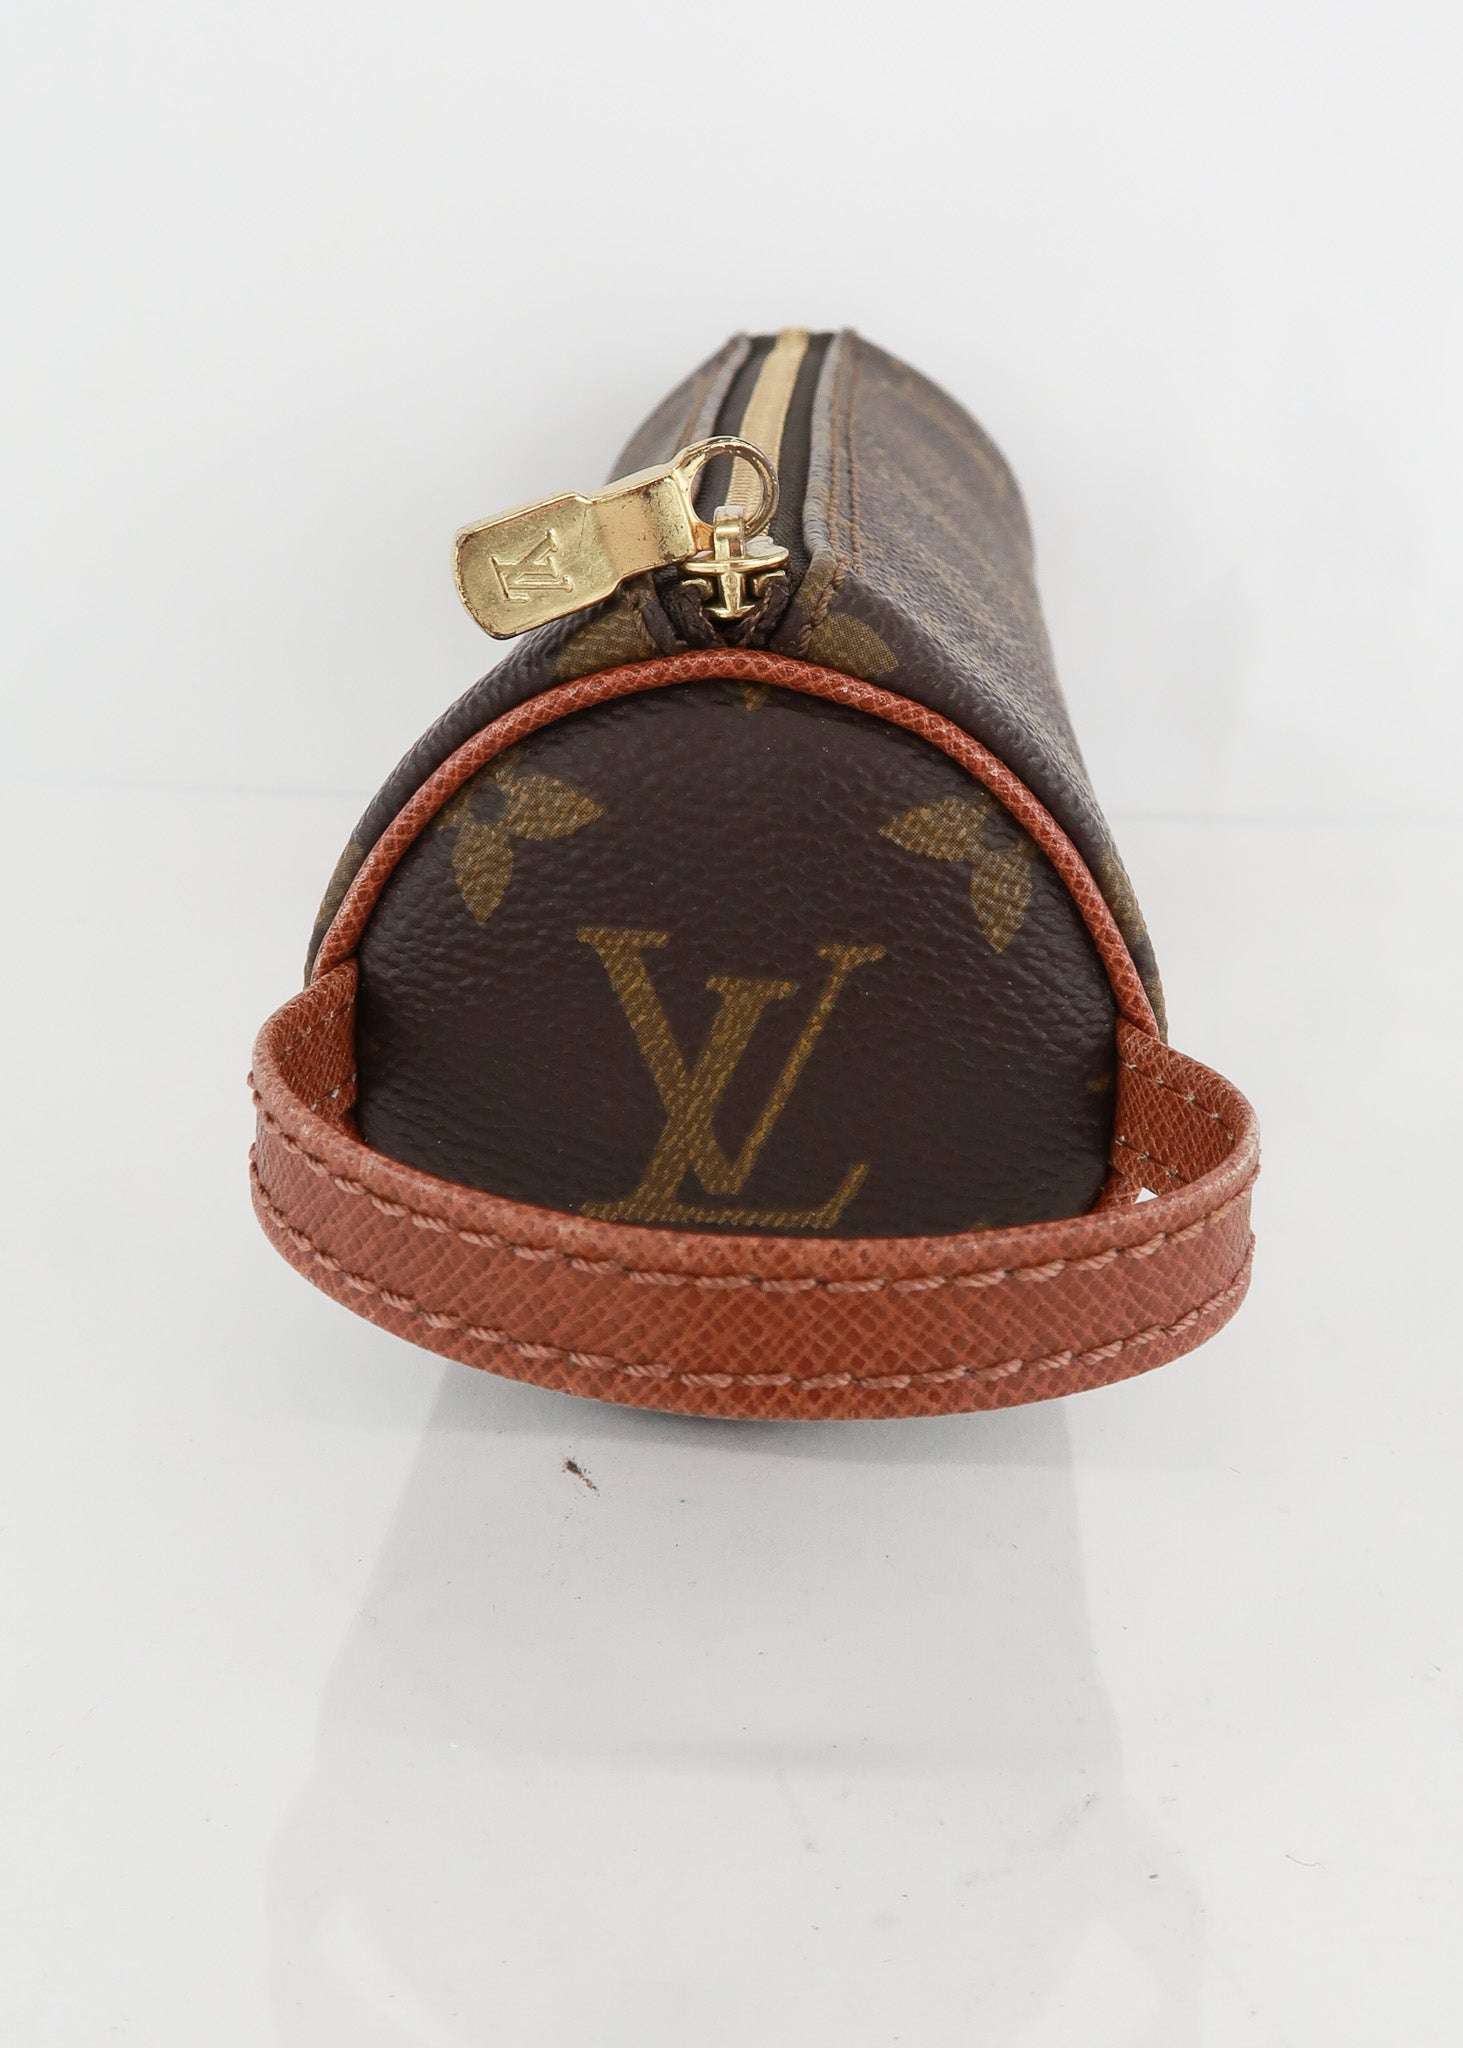 Louis Vuitton, Bags, Very Rare Authentic Vintage Louis Vuitton Monogram  Leather Pen Comb Holder